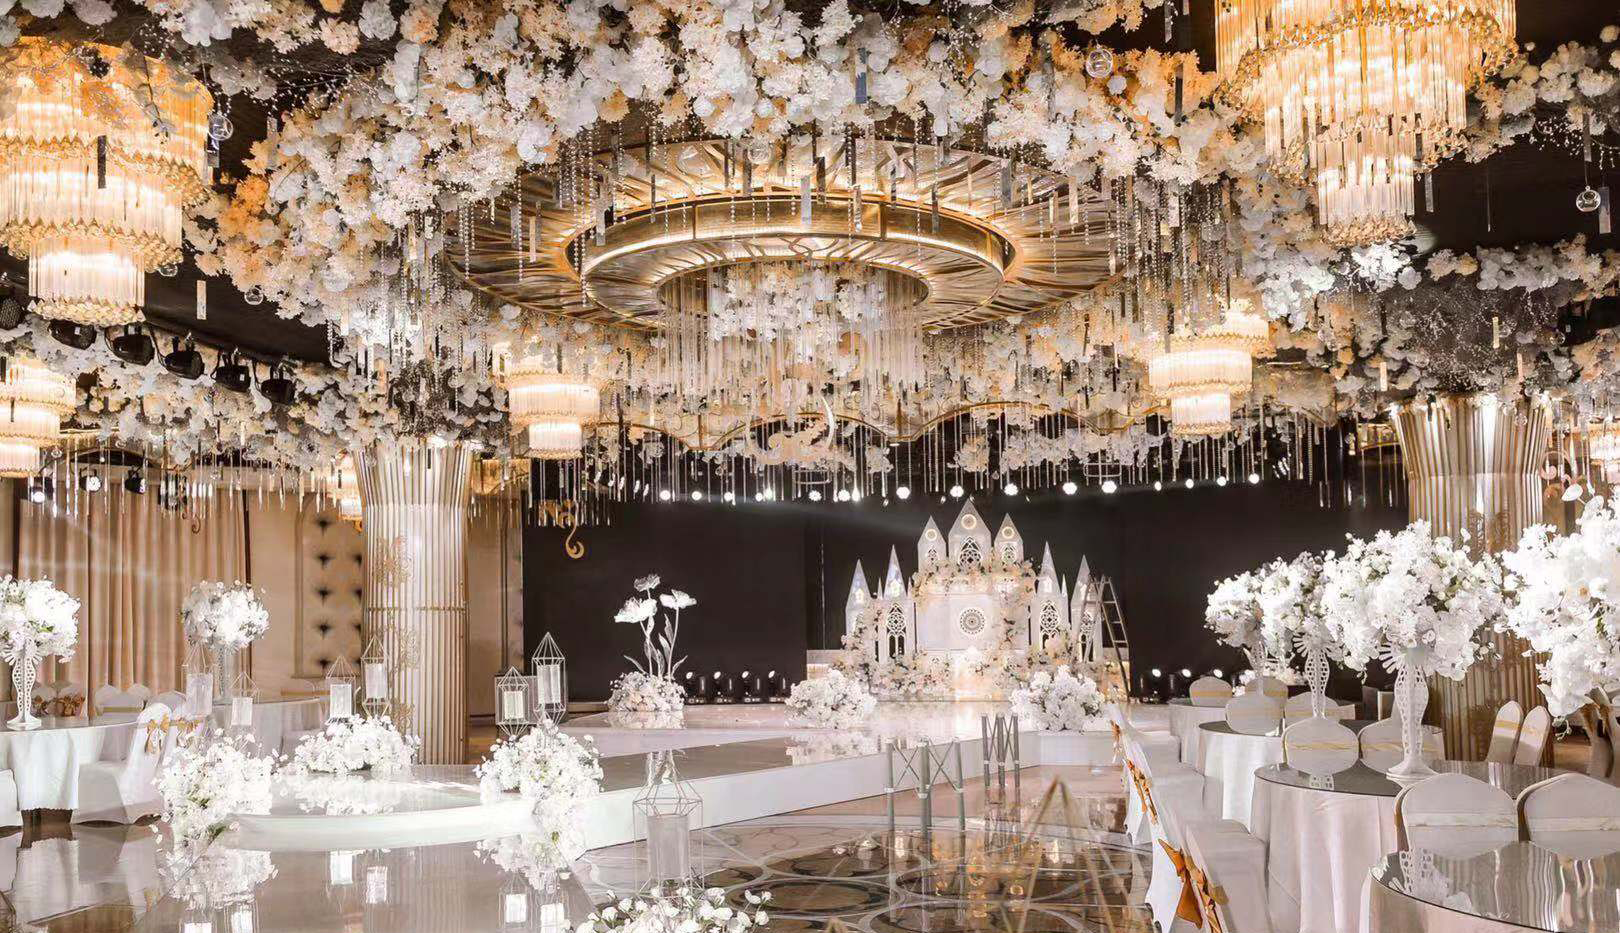 这才是婚礼该有的样子,最美婚宴厅设计